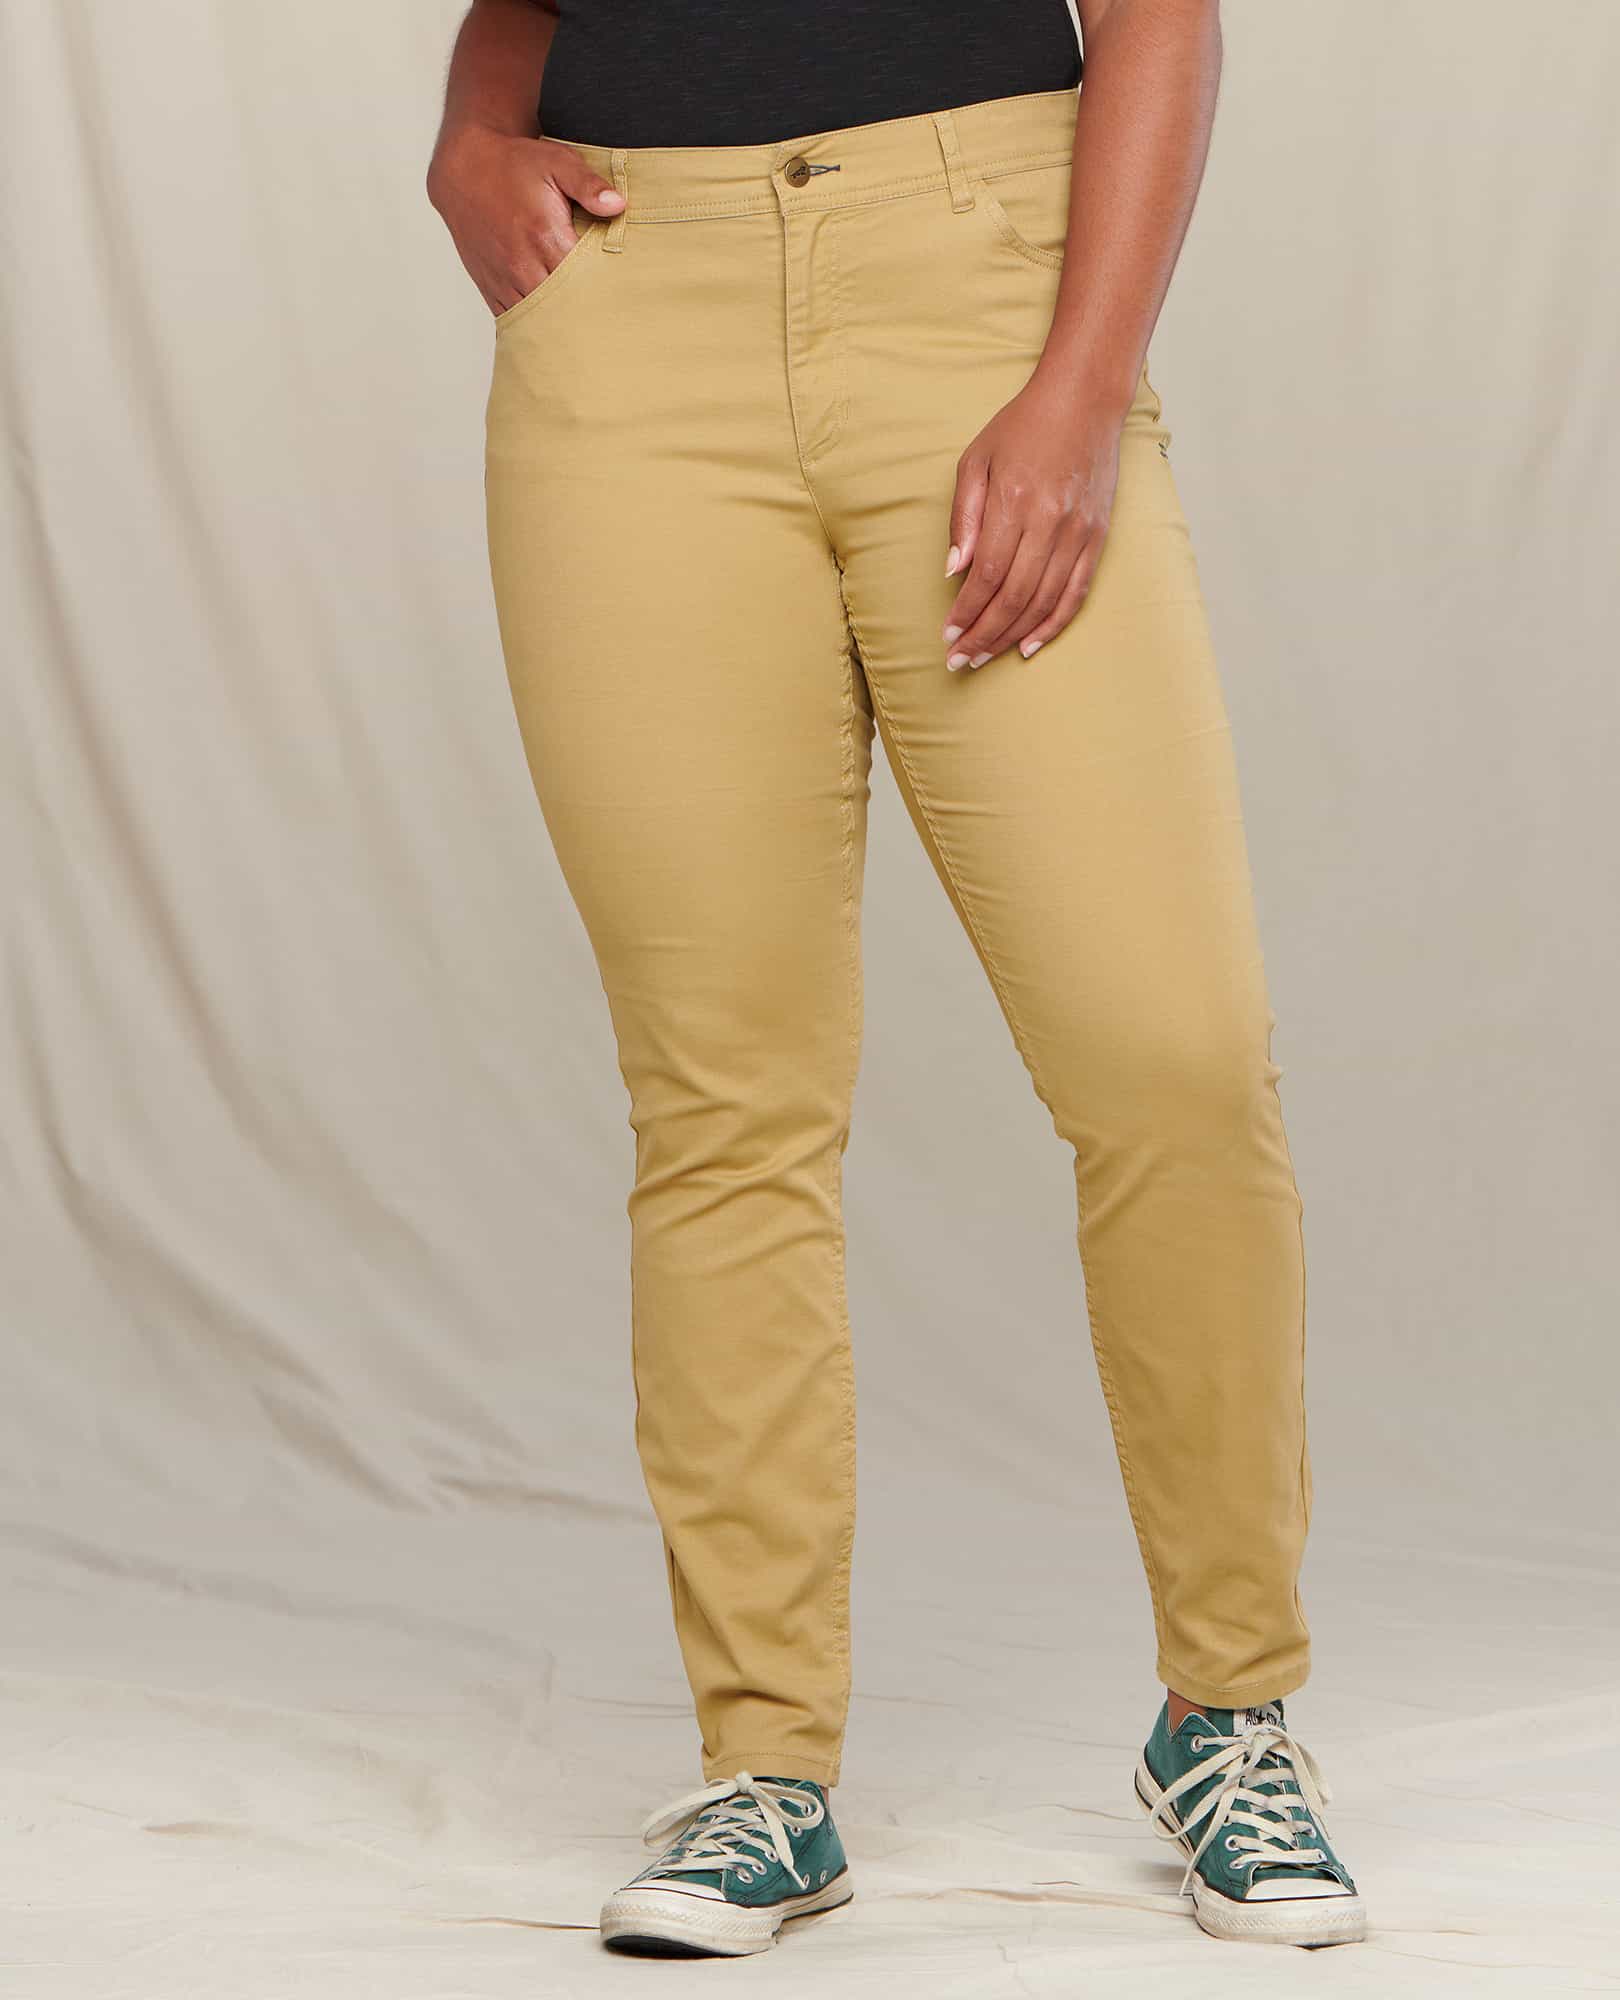 Ladies Cargo Pants Skinny Stretch Womens Jeans khaki Sizes 6 8 10